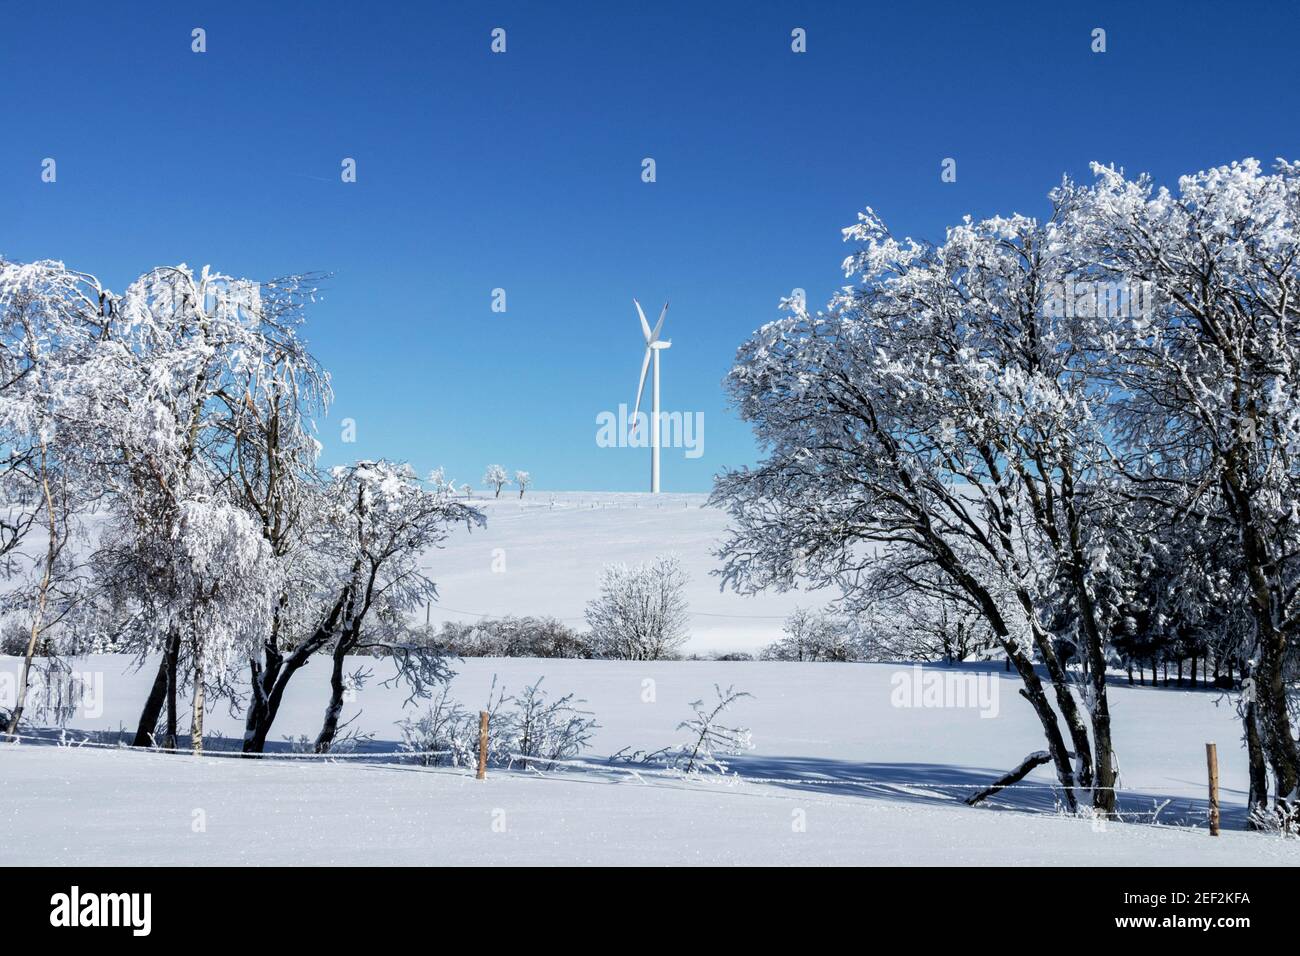 Paesaggio invernale, una turbina eolica nella campagna innevata, energia alternativa invernale Foto Stock